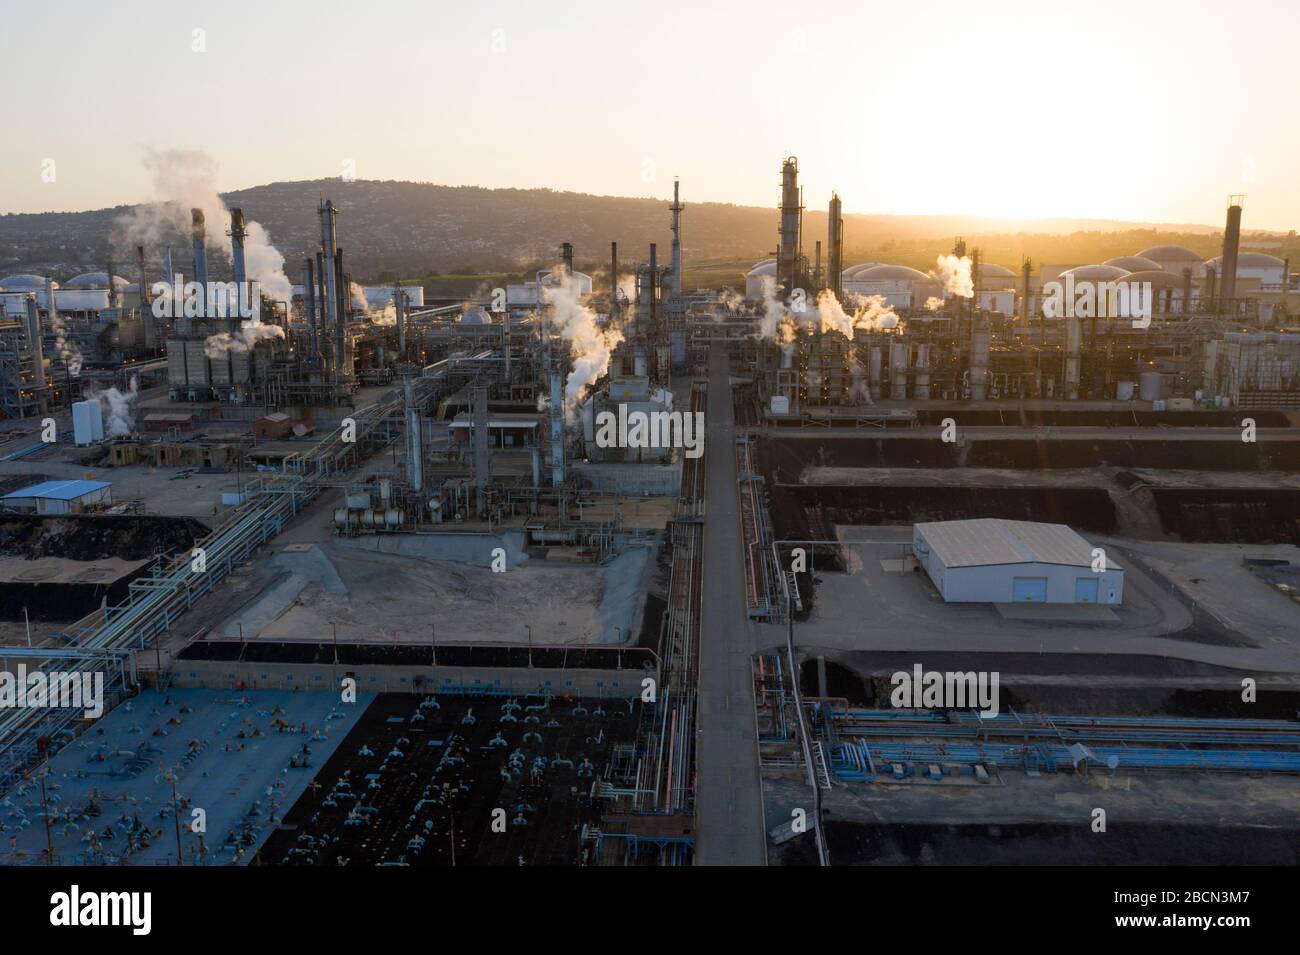 Vista aérea de la refinería de petróleo Foto de stock